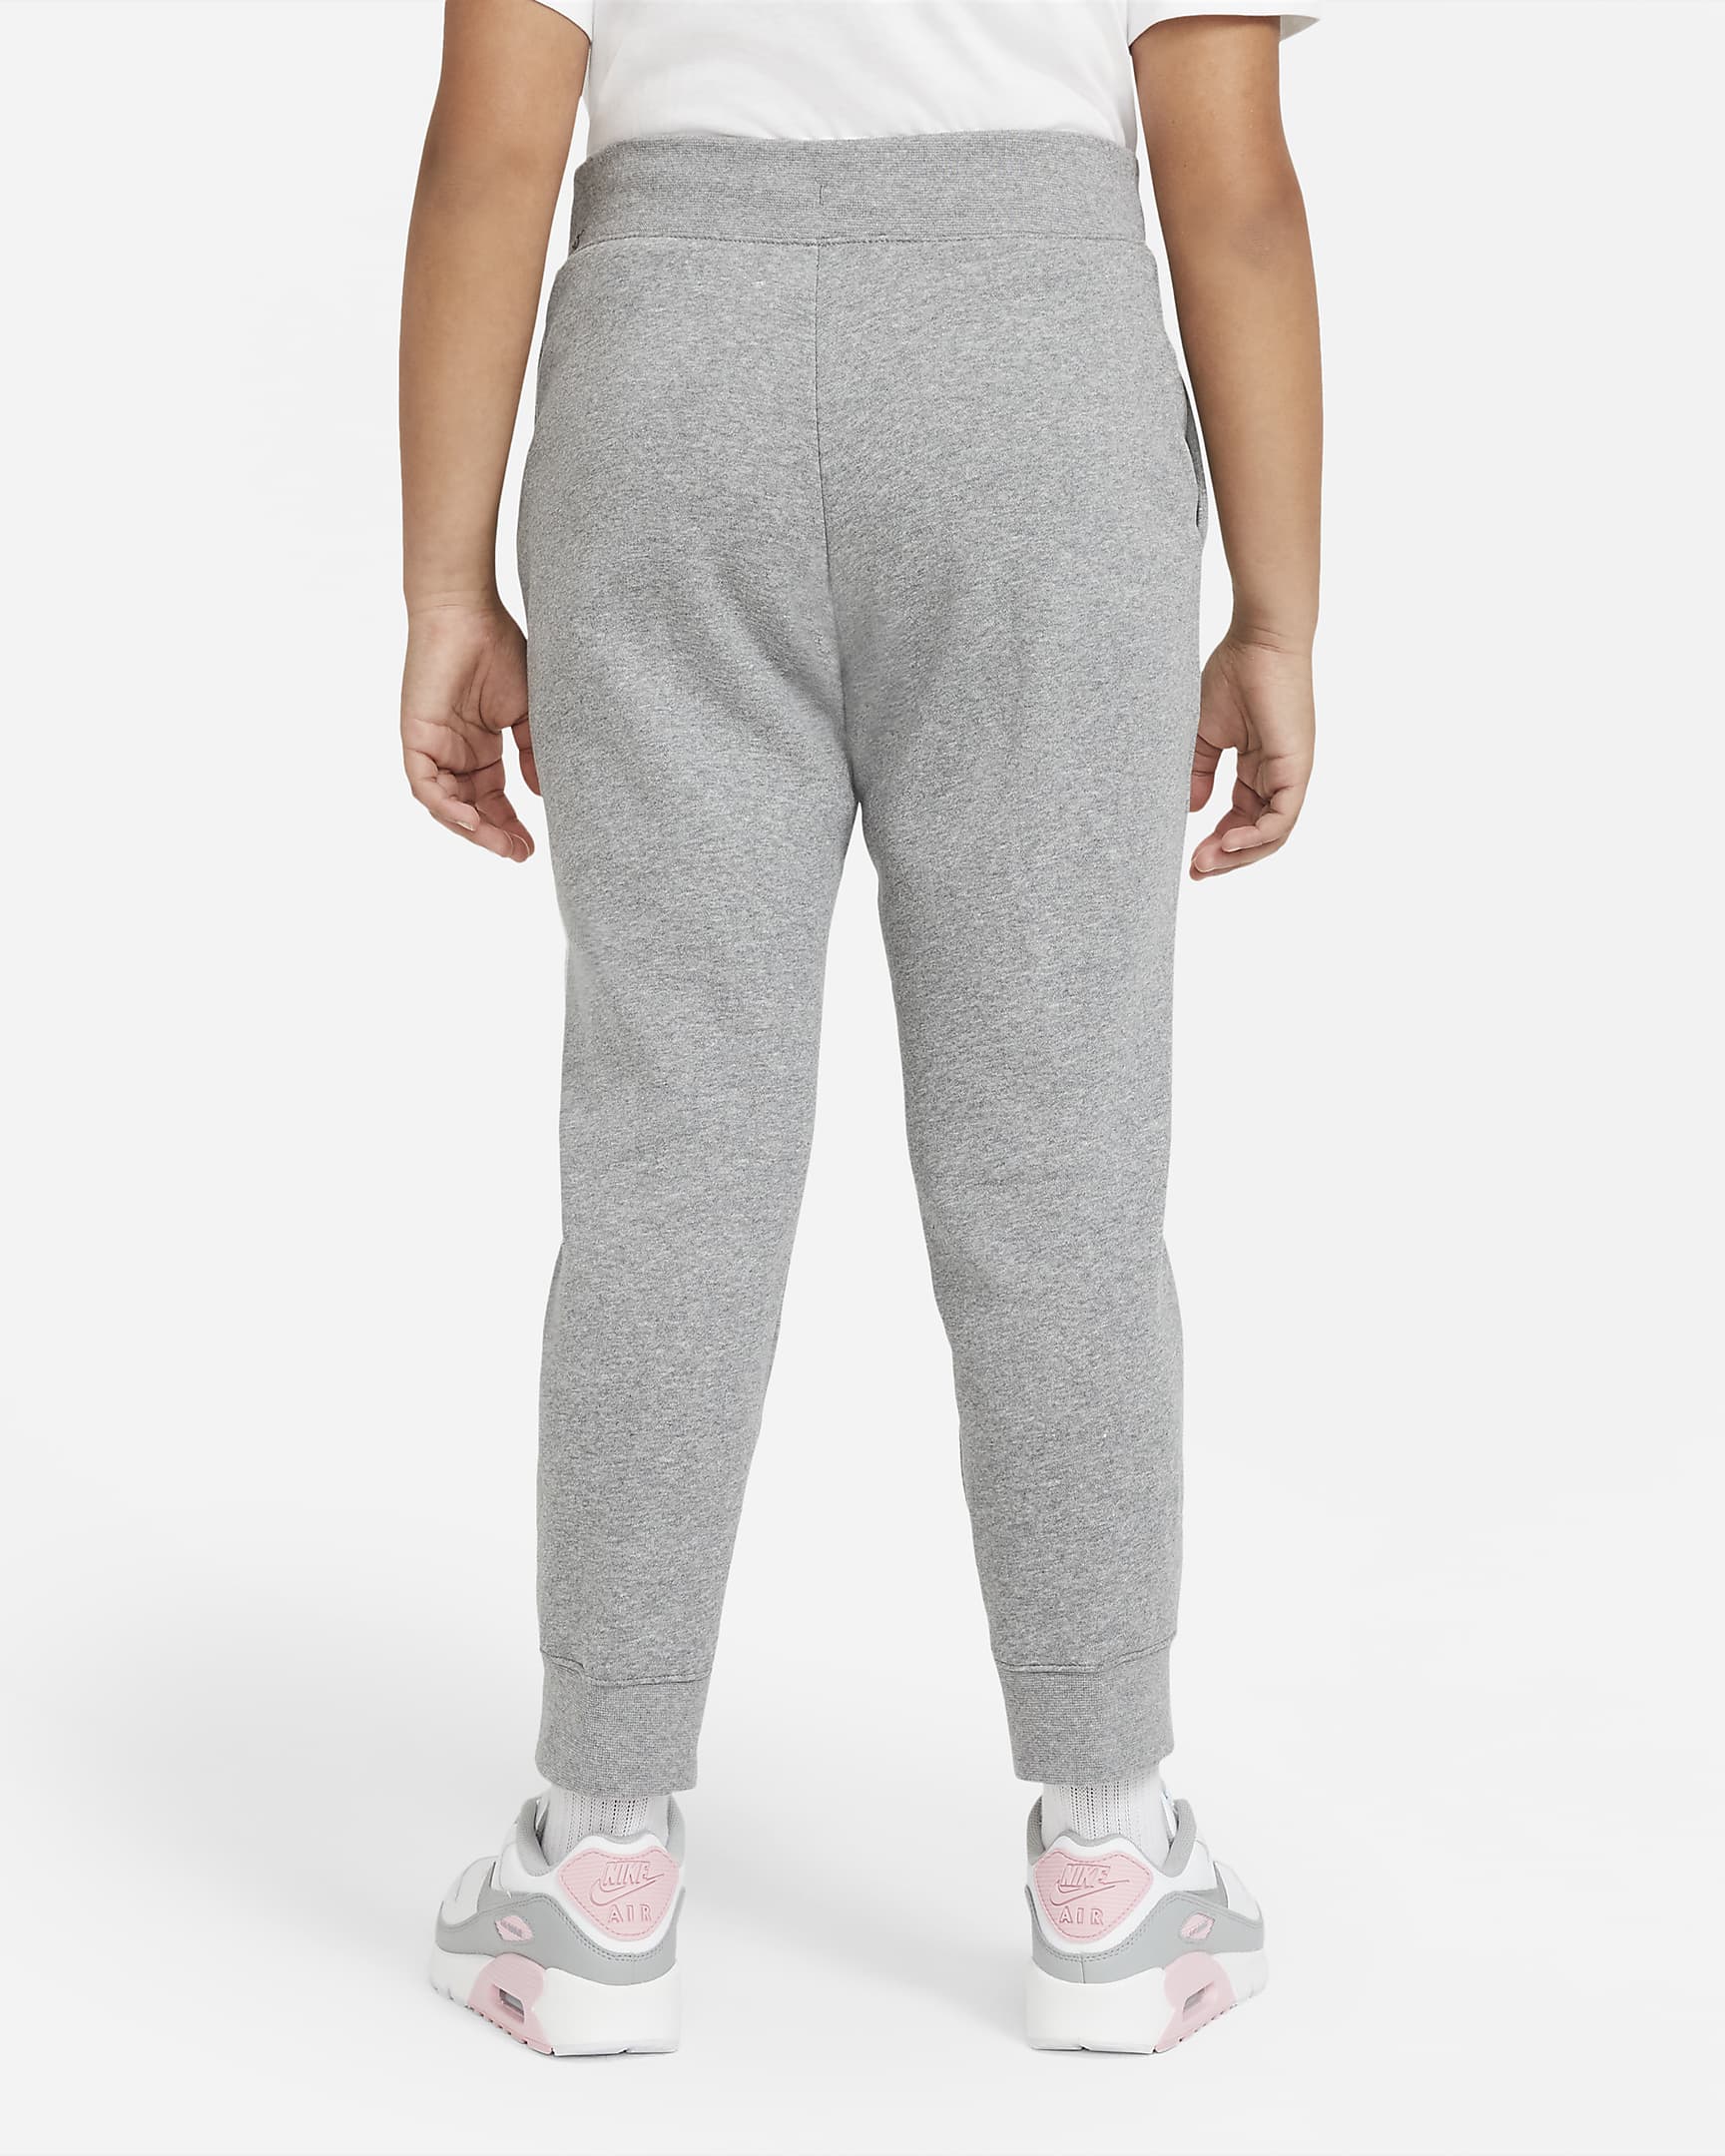 Nike Sportswear Older Kids' (Girls') Trousers (Extended Size). Nike SE